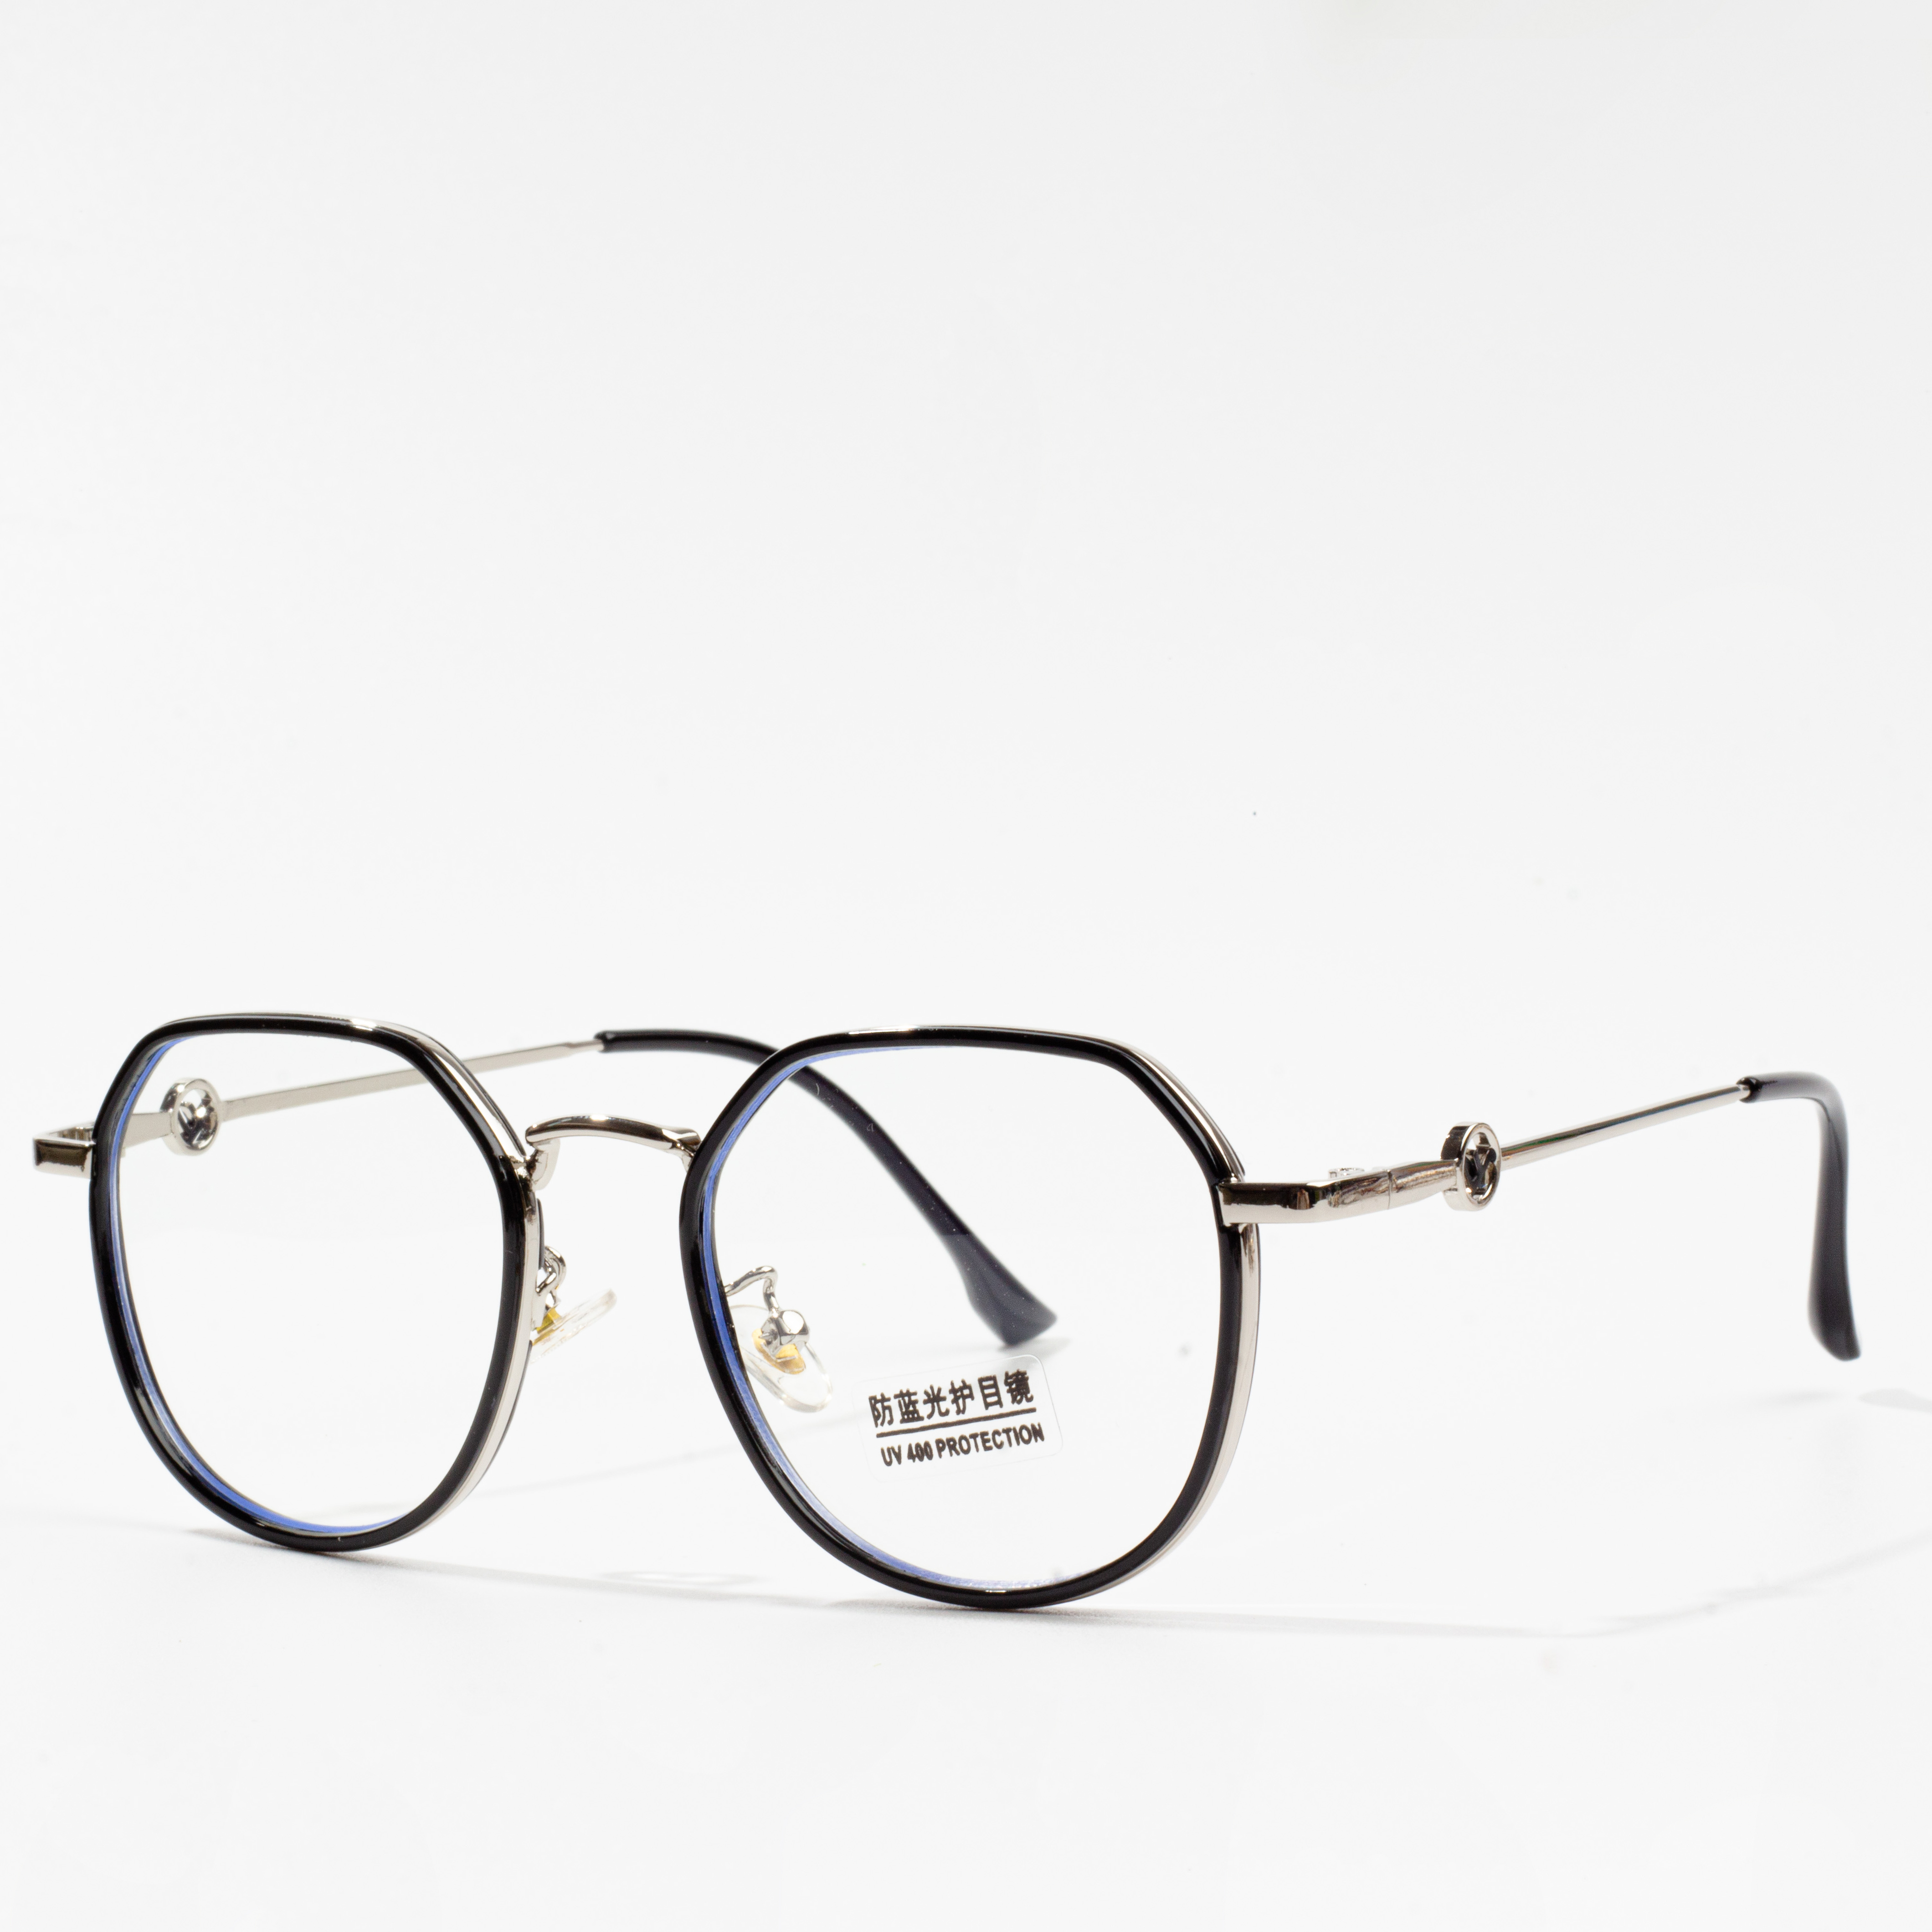 fframiau eyeglass vintage